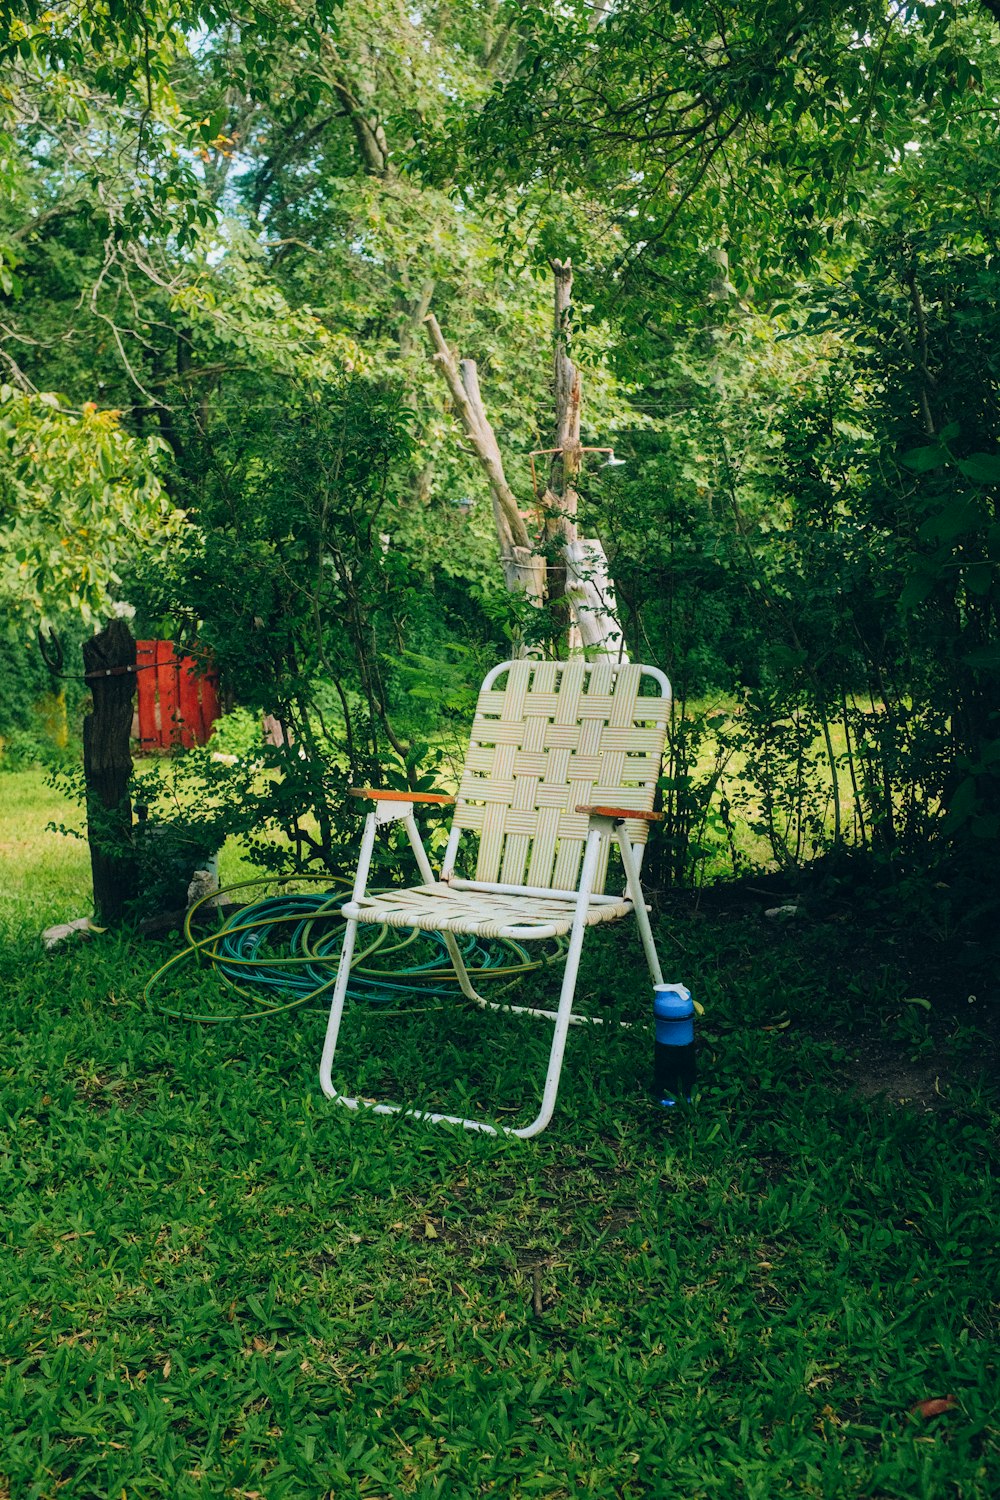 a chair and a wheelbarrow in a yard